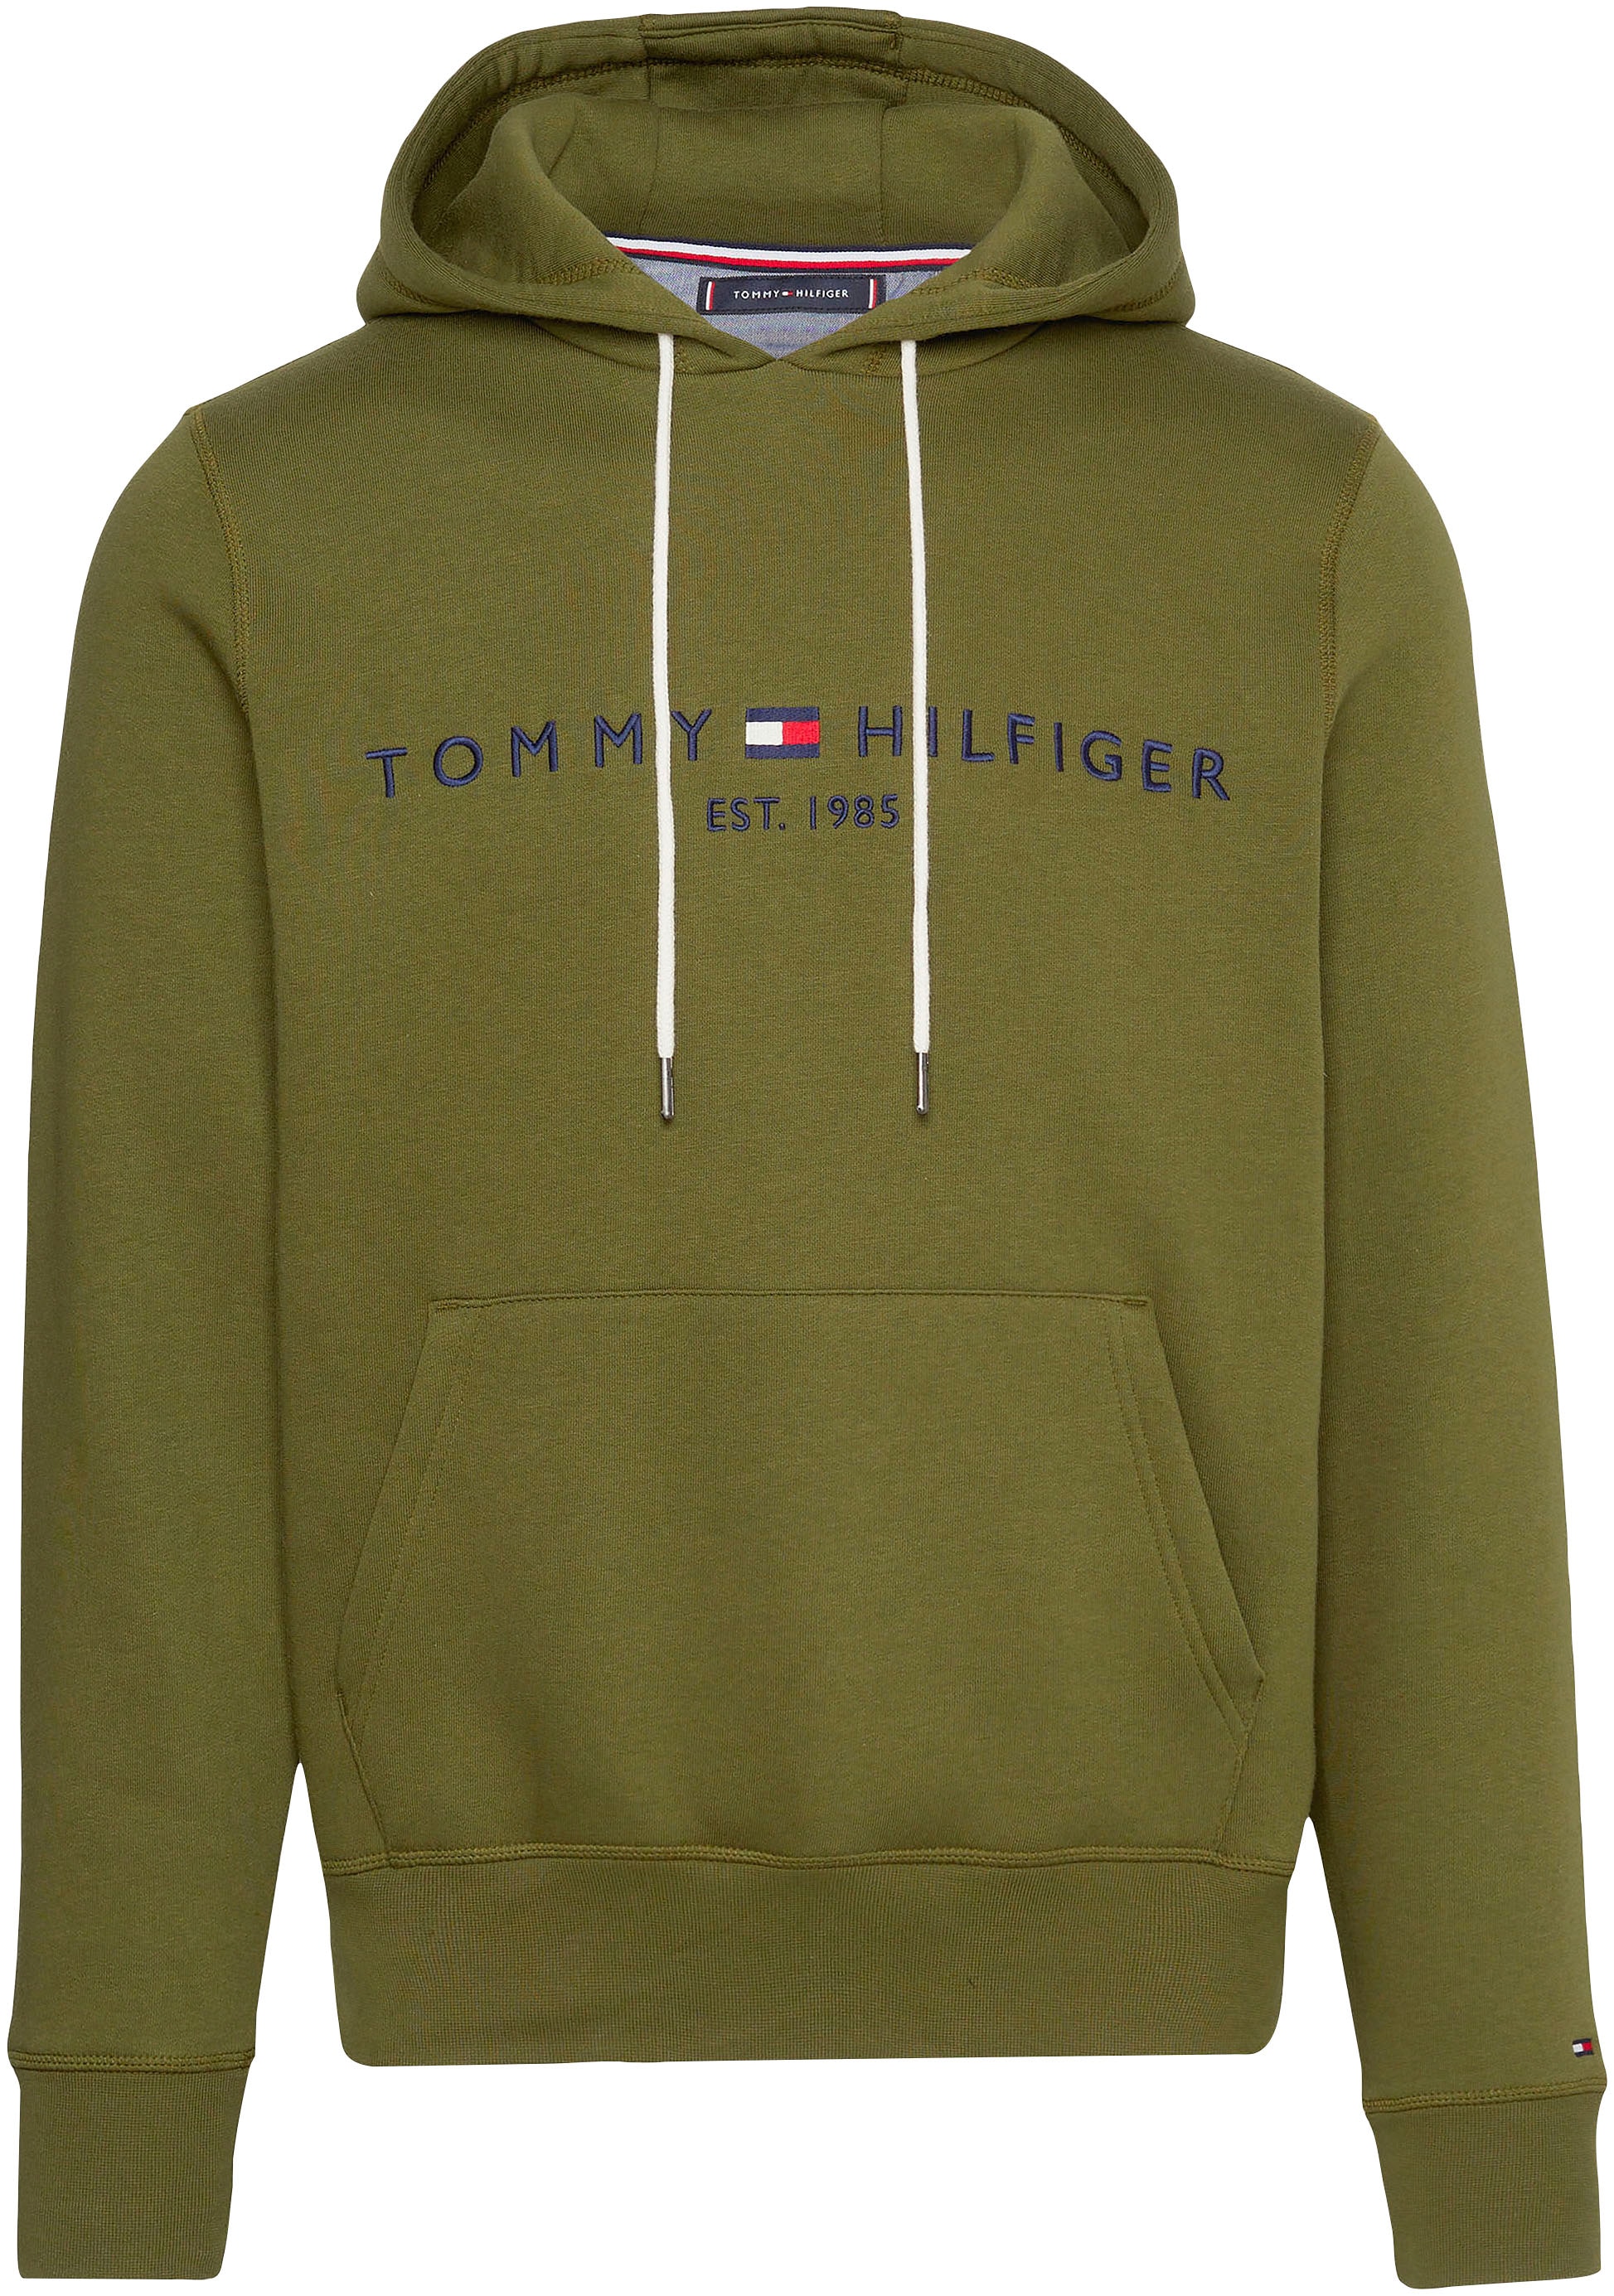 »TOMMY BAUR der gesticktem LOGO Hilfiger mit TH-Schriftzug kaufen Brust Kapuzensweatshirt HOODY«, Tommy ▷ | auf